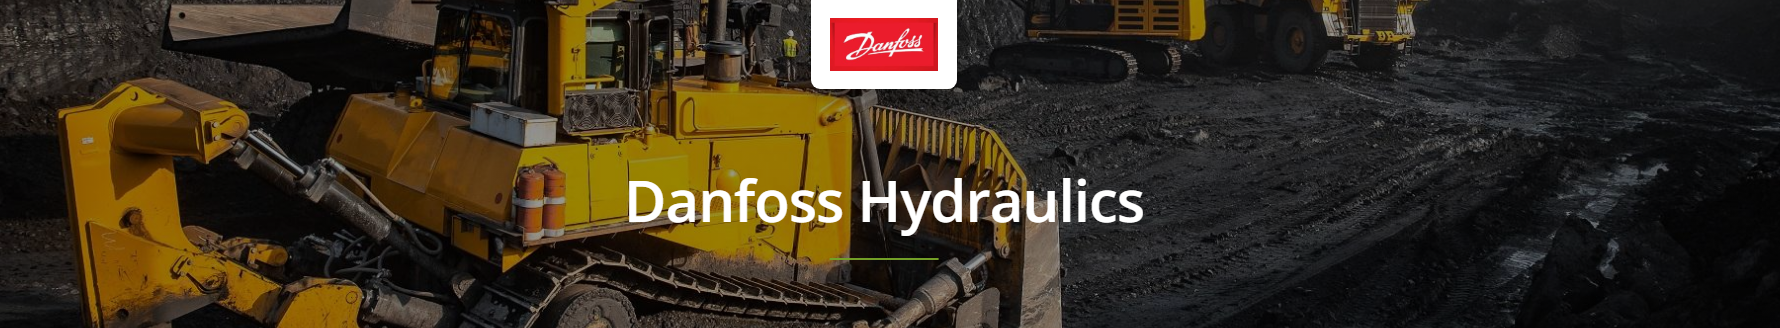 Danfoss Hydraulic Pumps